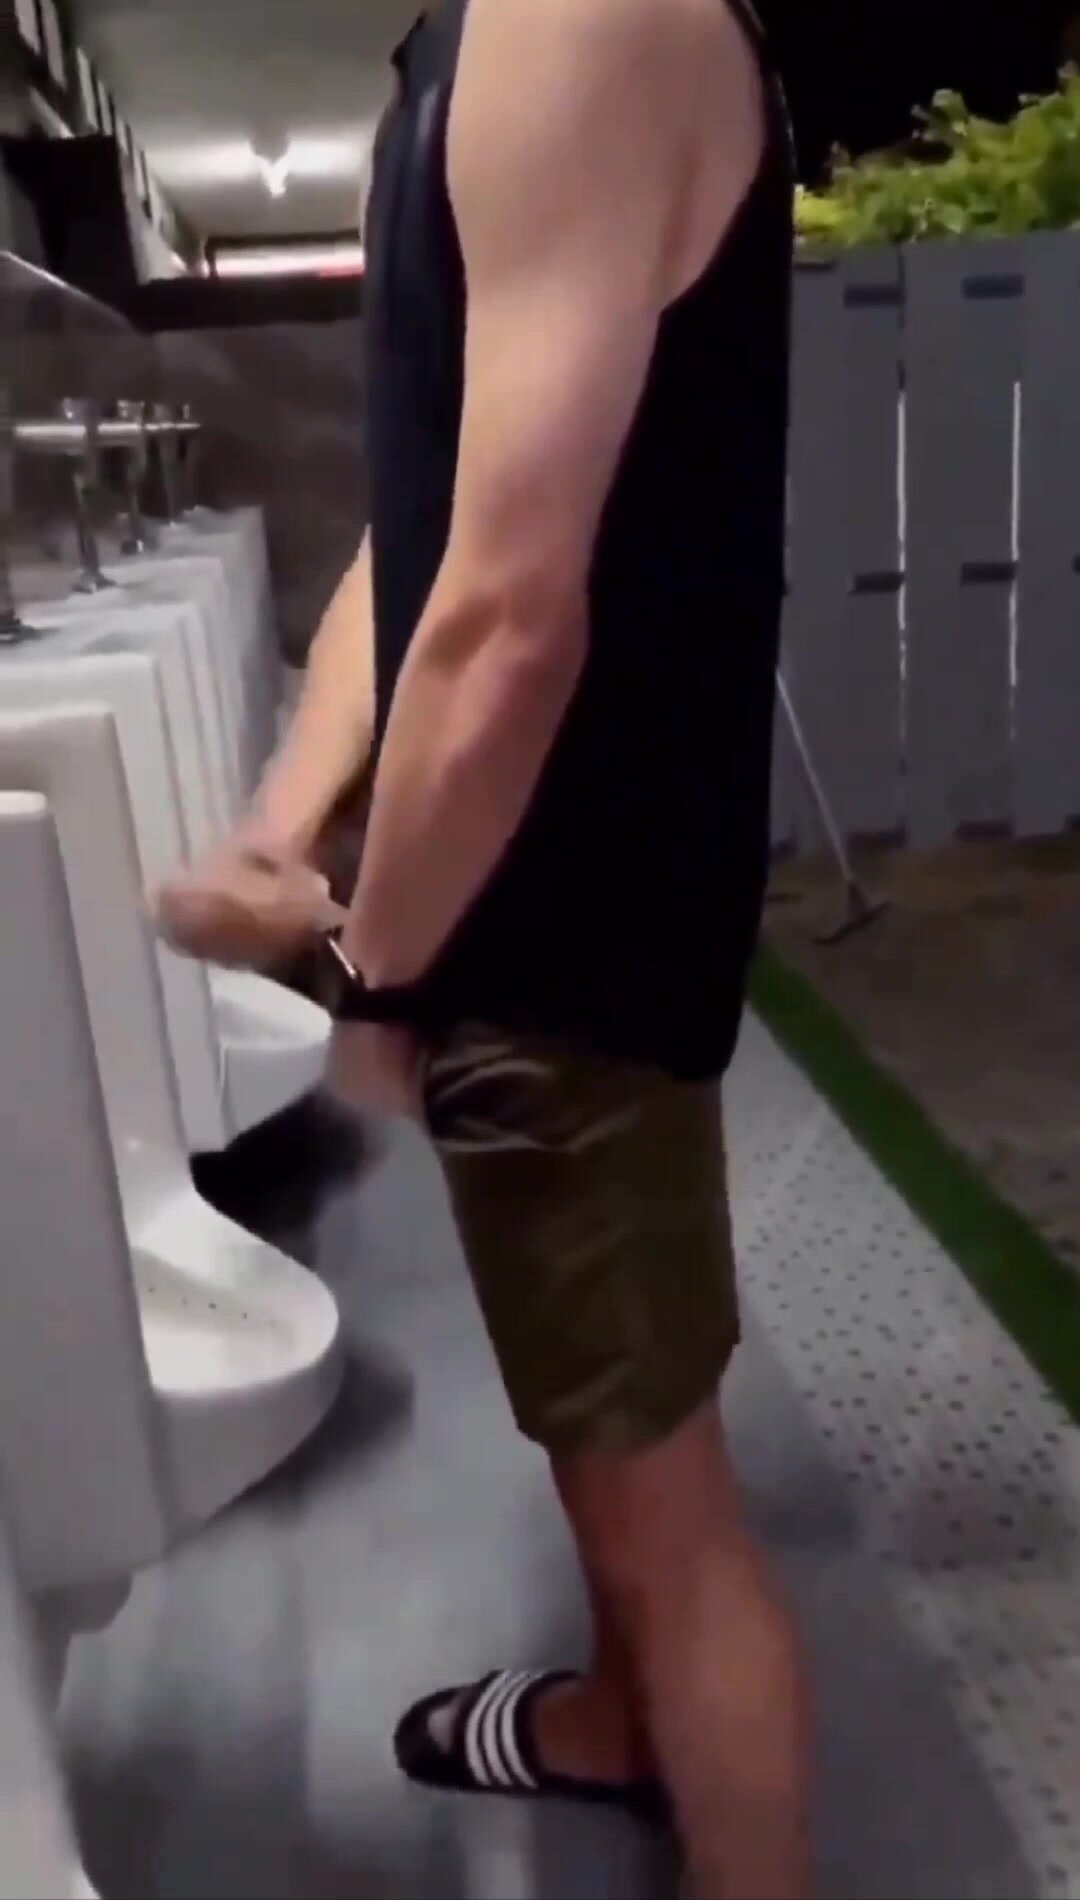 Big cock cums at urinal